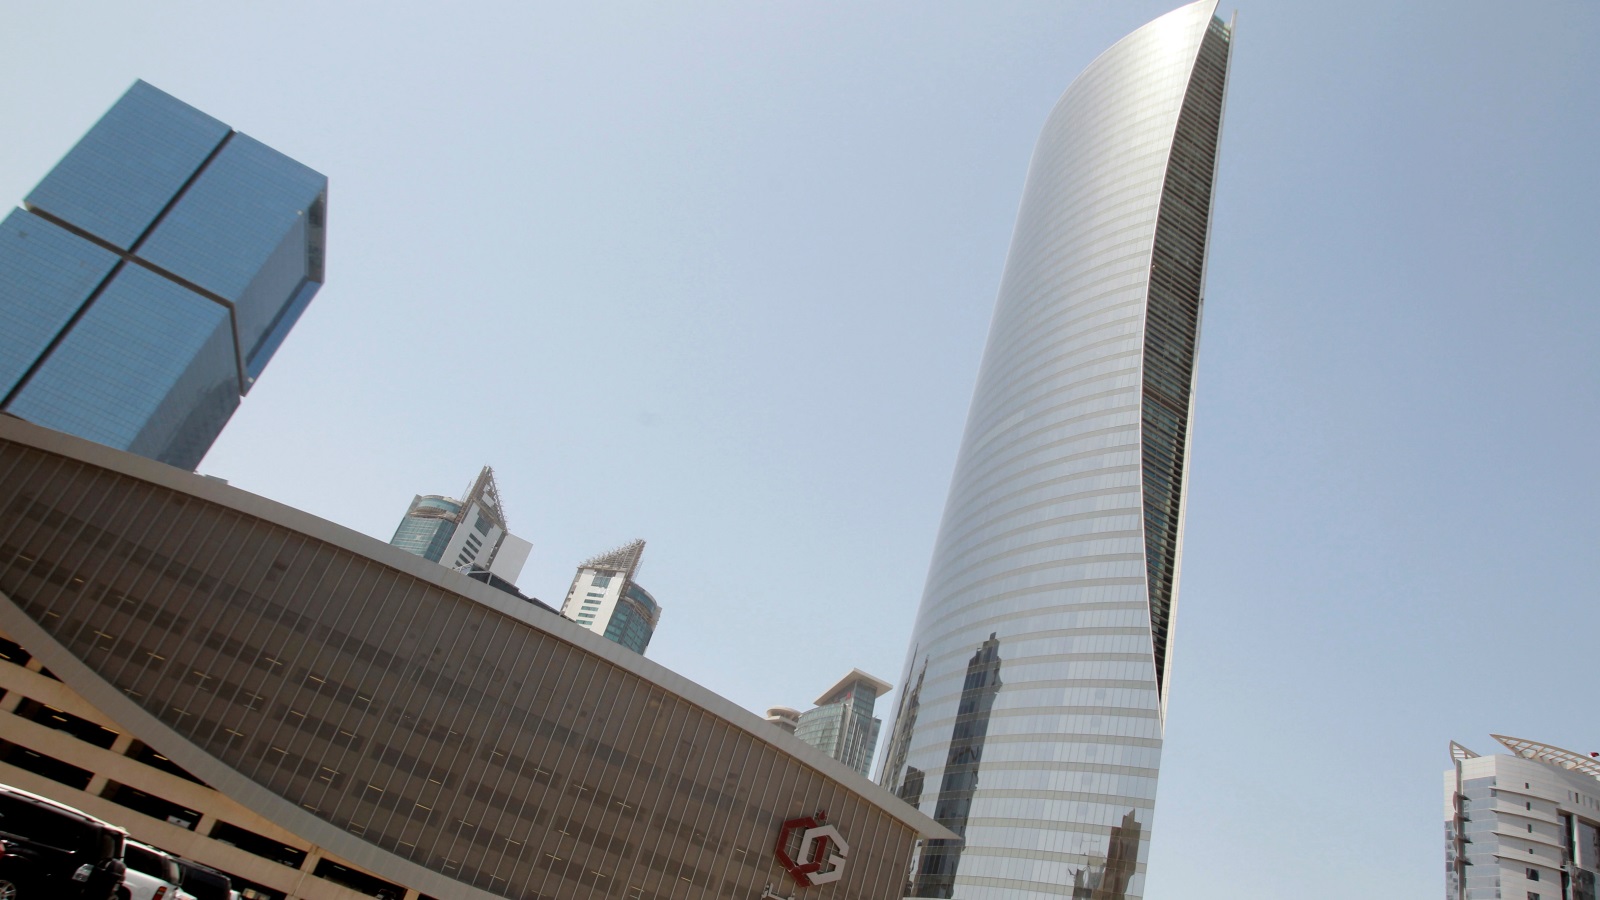 ‪قطر أعلنت مؤخرا عن خطة لزيادة إنتاجها من الغاز المسال بـ 30%‬ قطر أعلنت مؤخرا عن خطة لزيادة إنتاجها من الغاز المسال بـ 30% (رويترز)